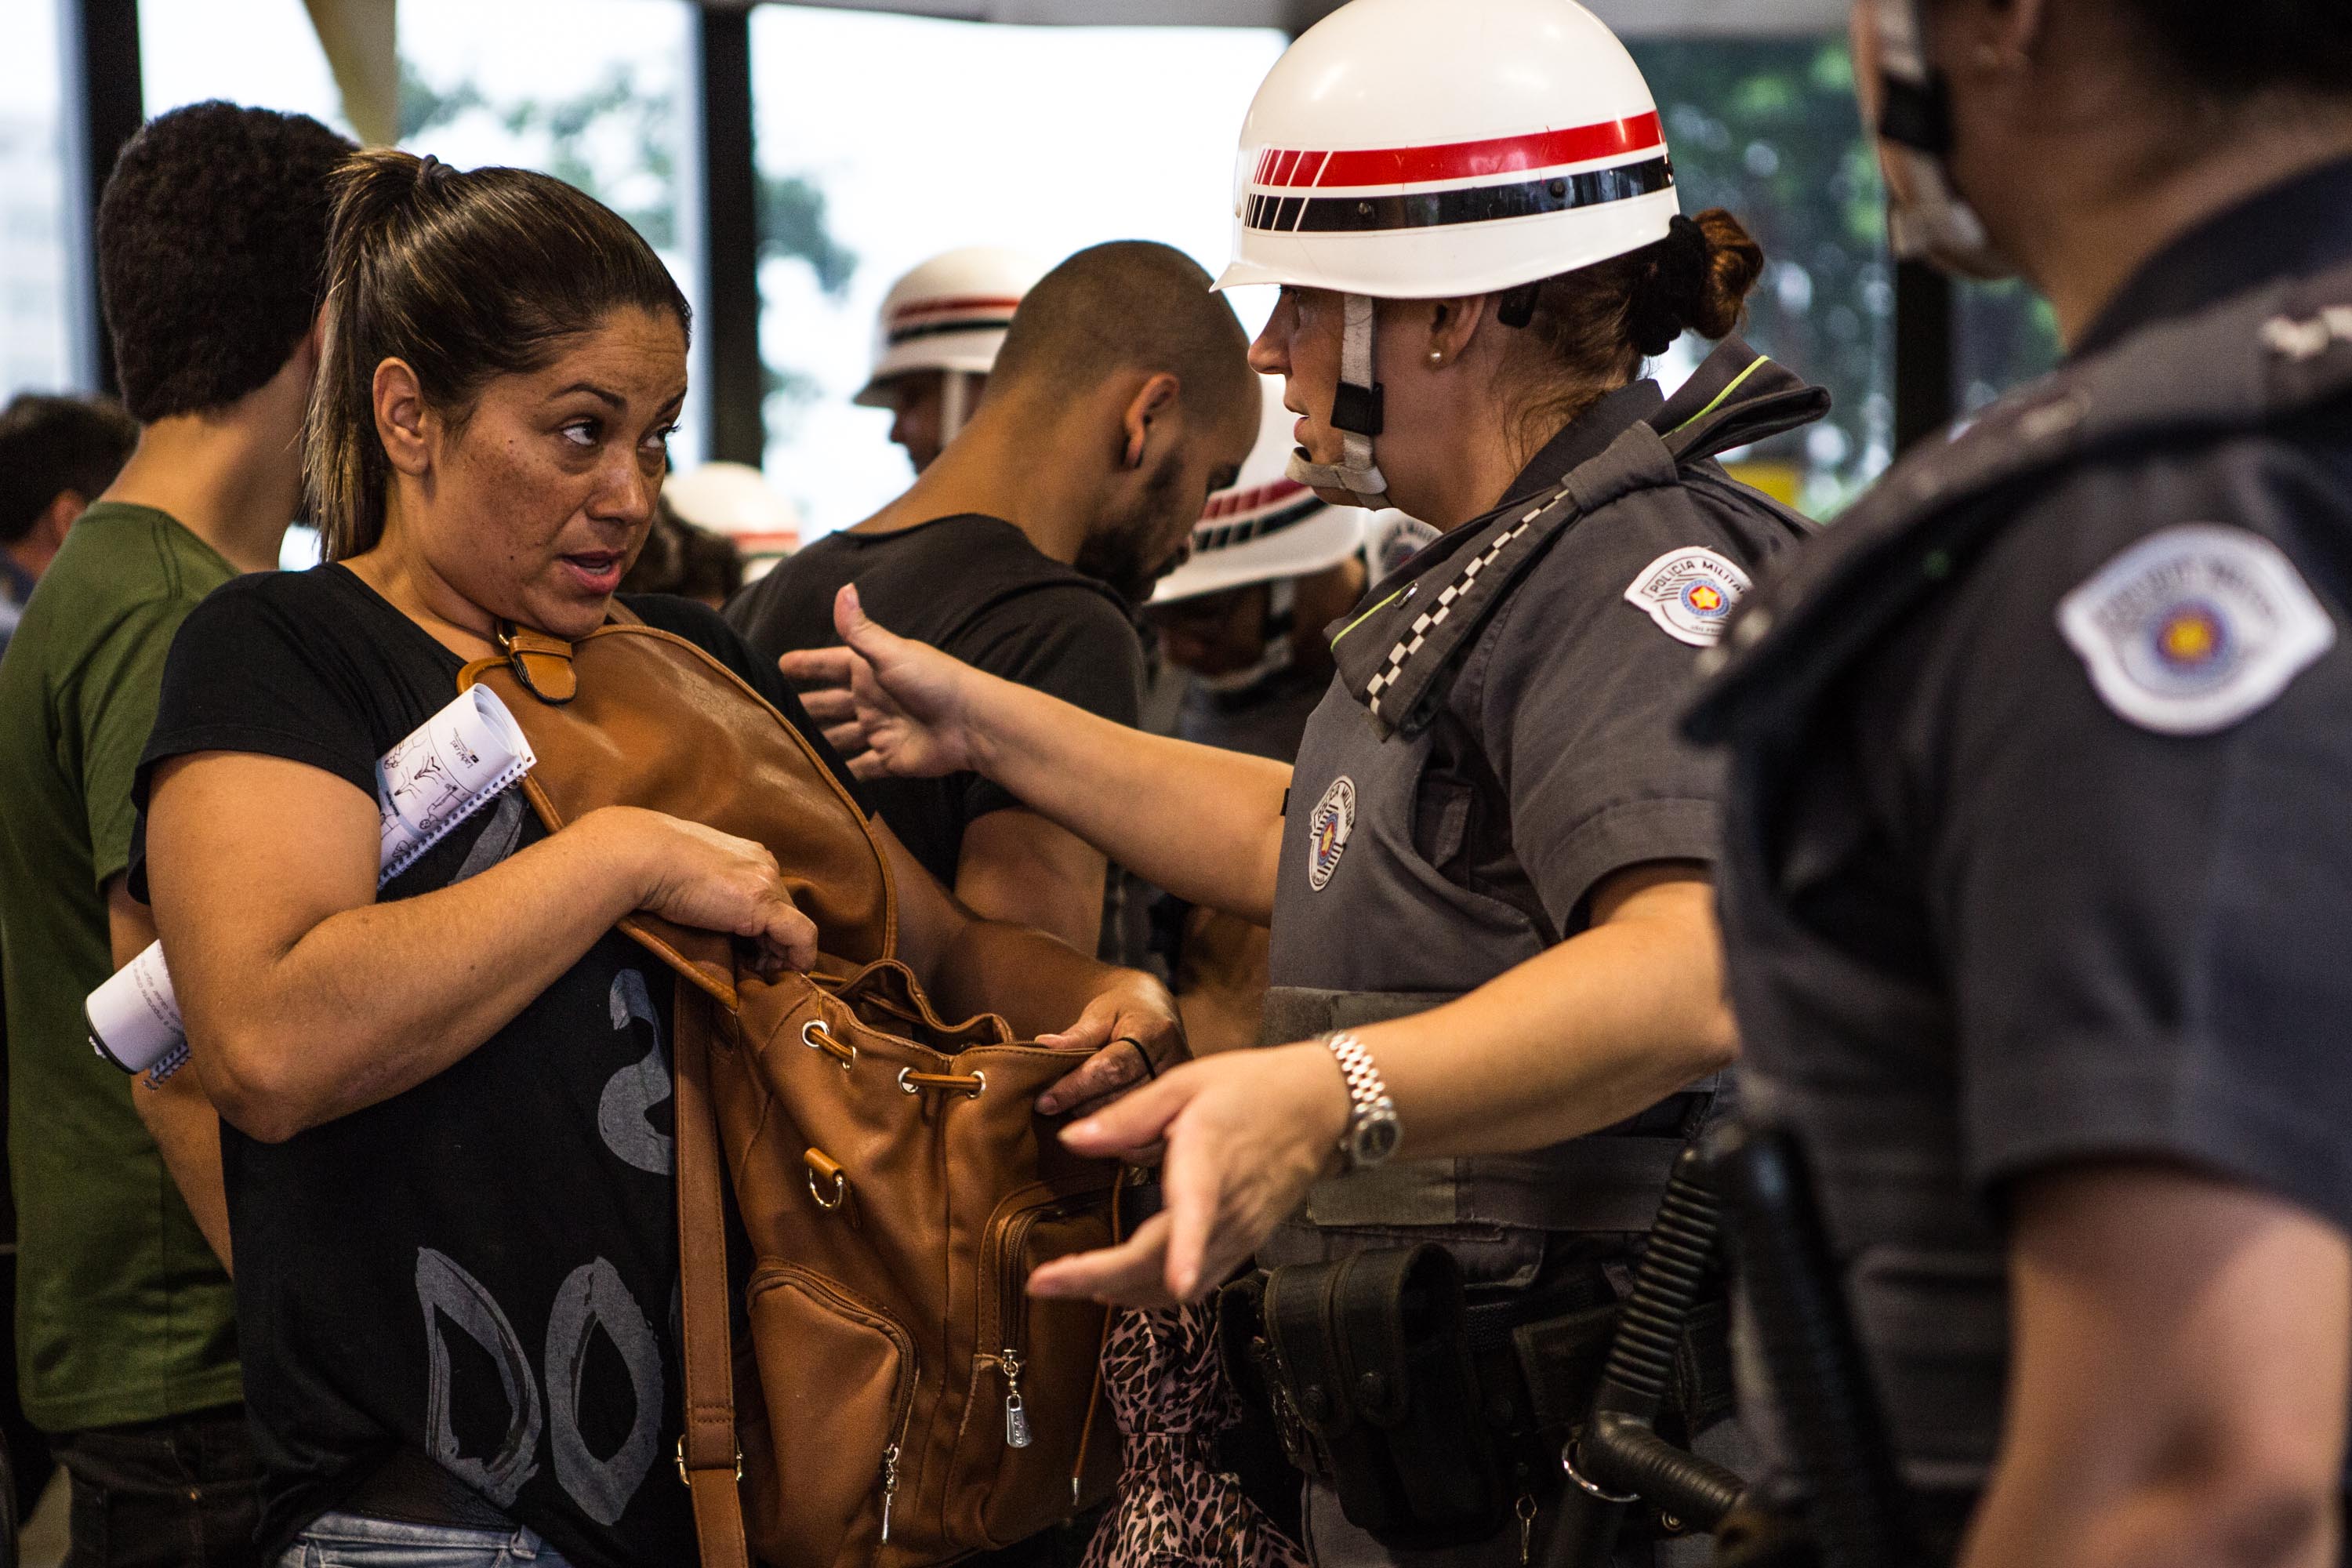 Policiais revistam usuários do metrô em dia de manifestação do MPL (Movimento Passe Livre).